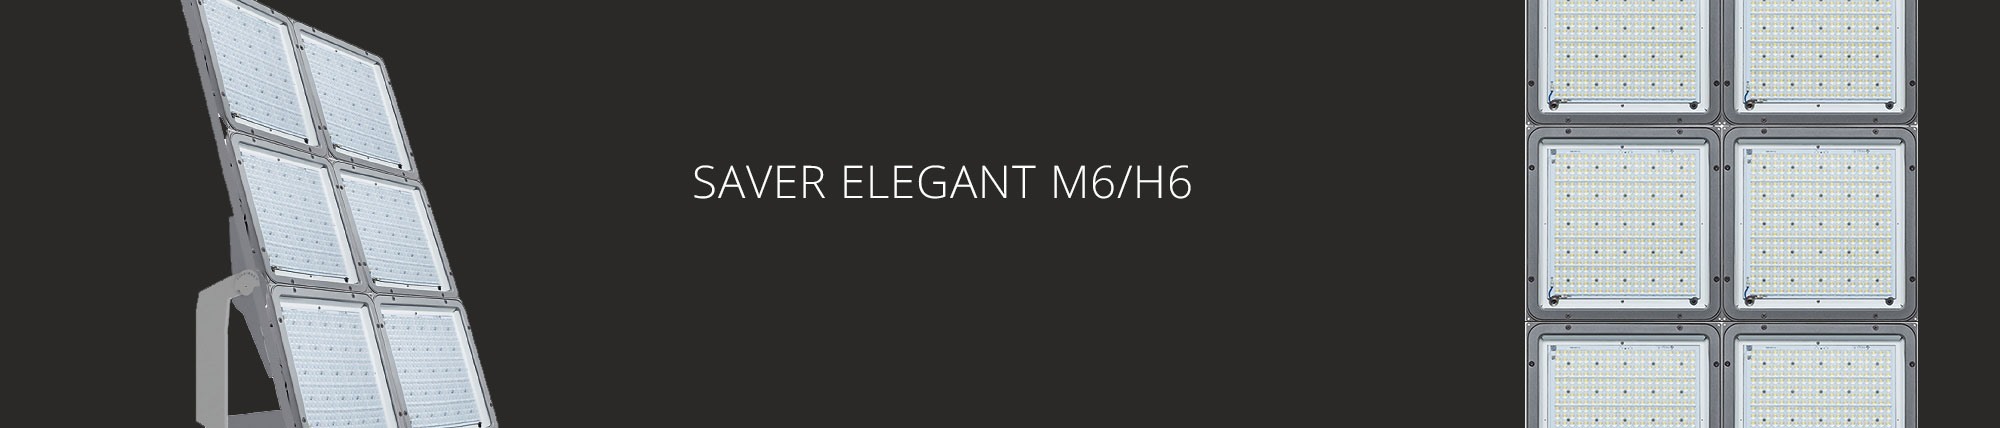 Saver Elegant M6/H6